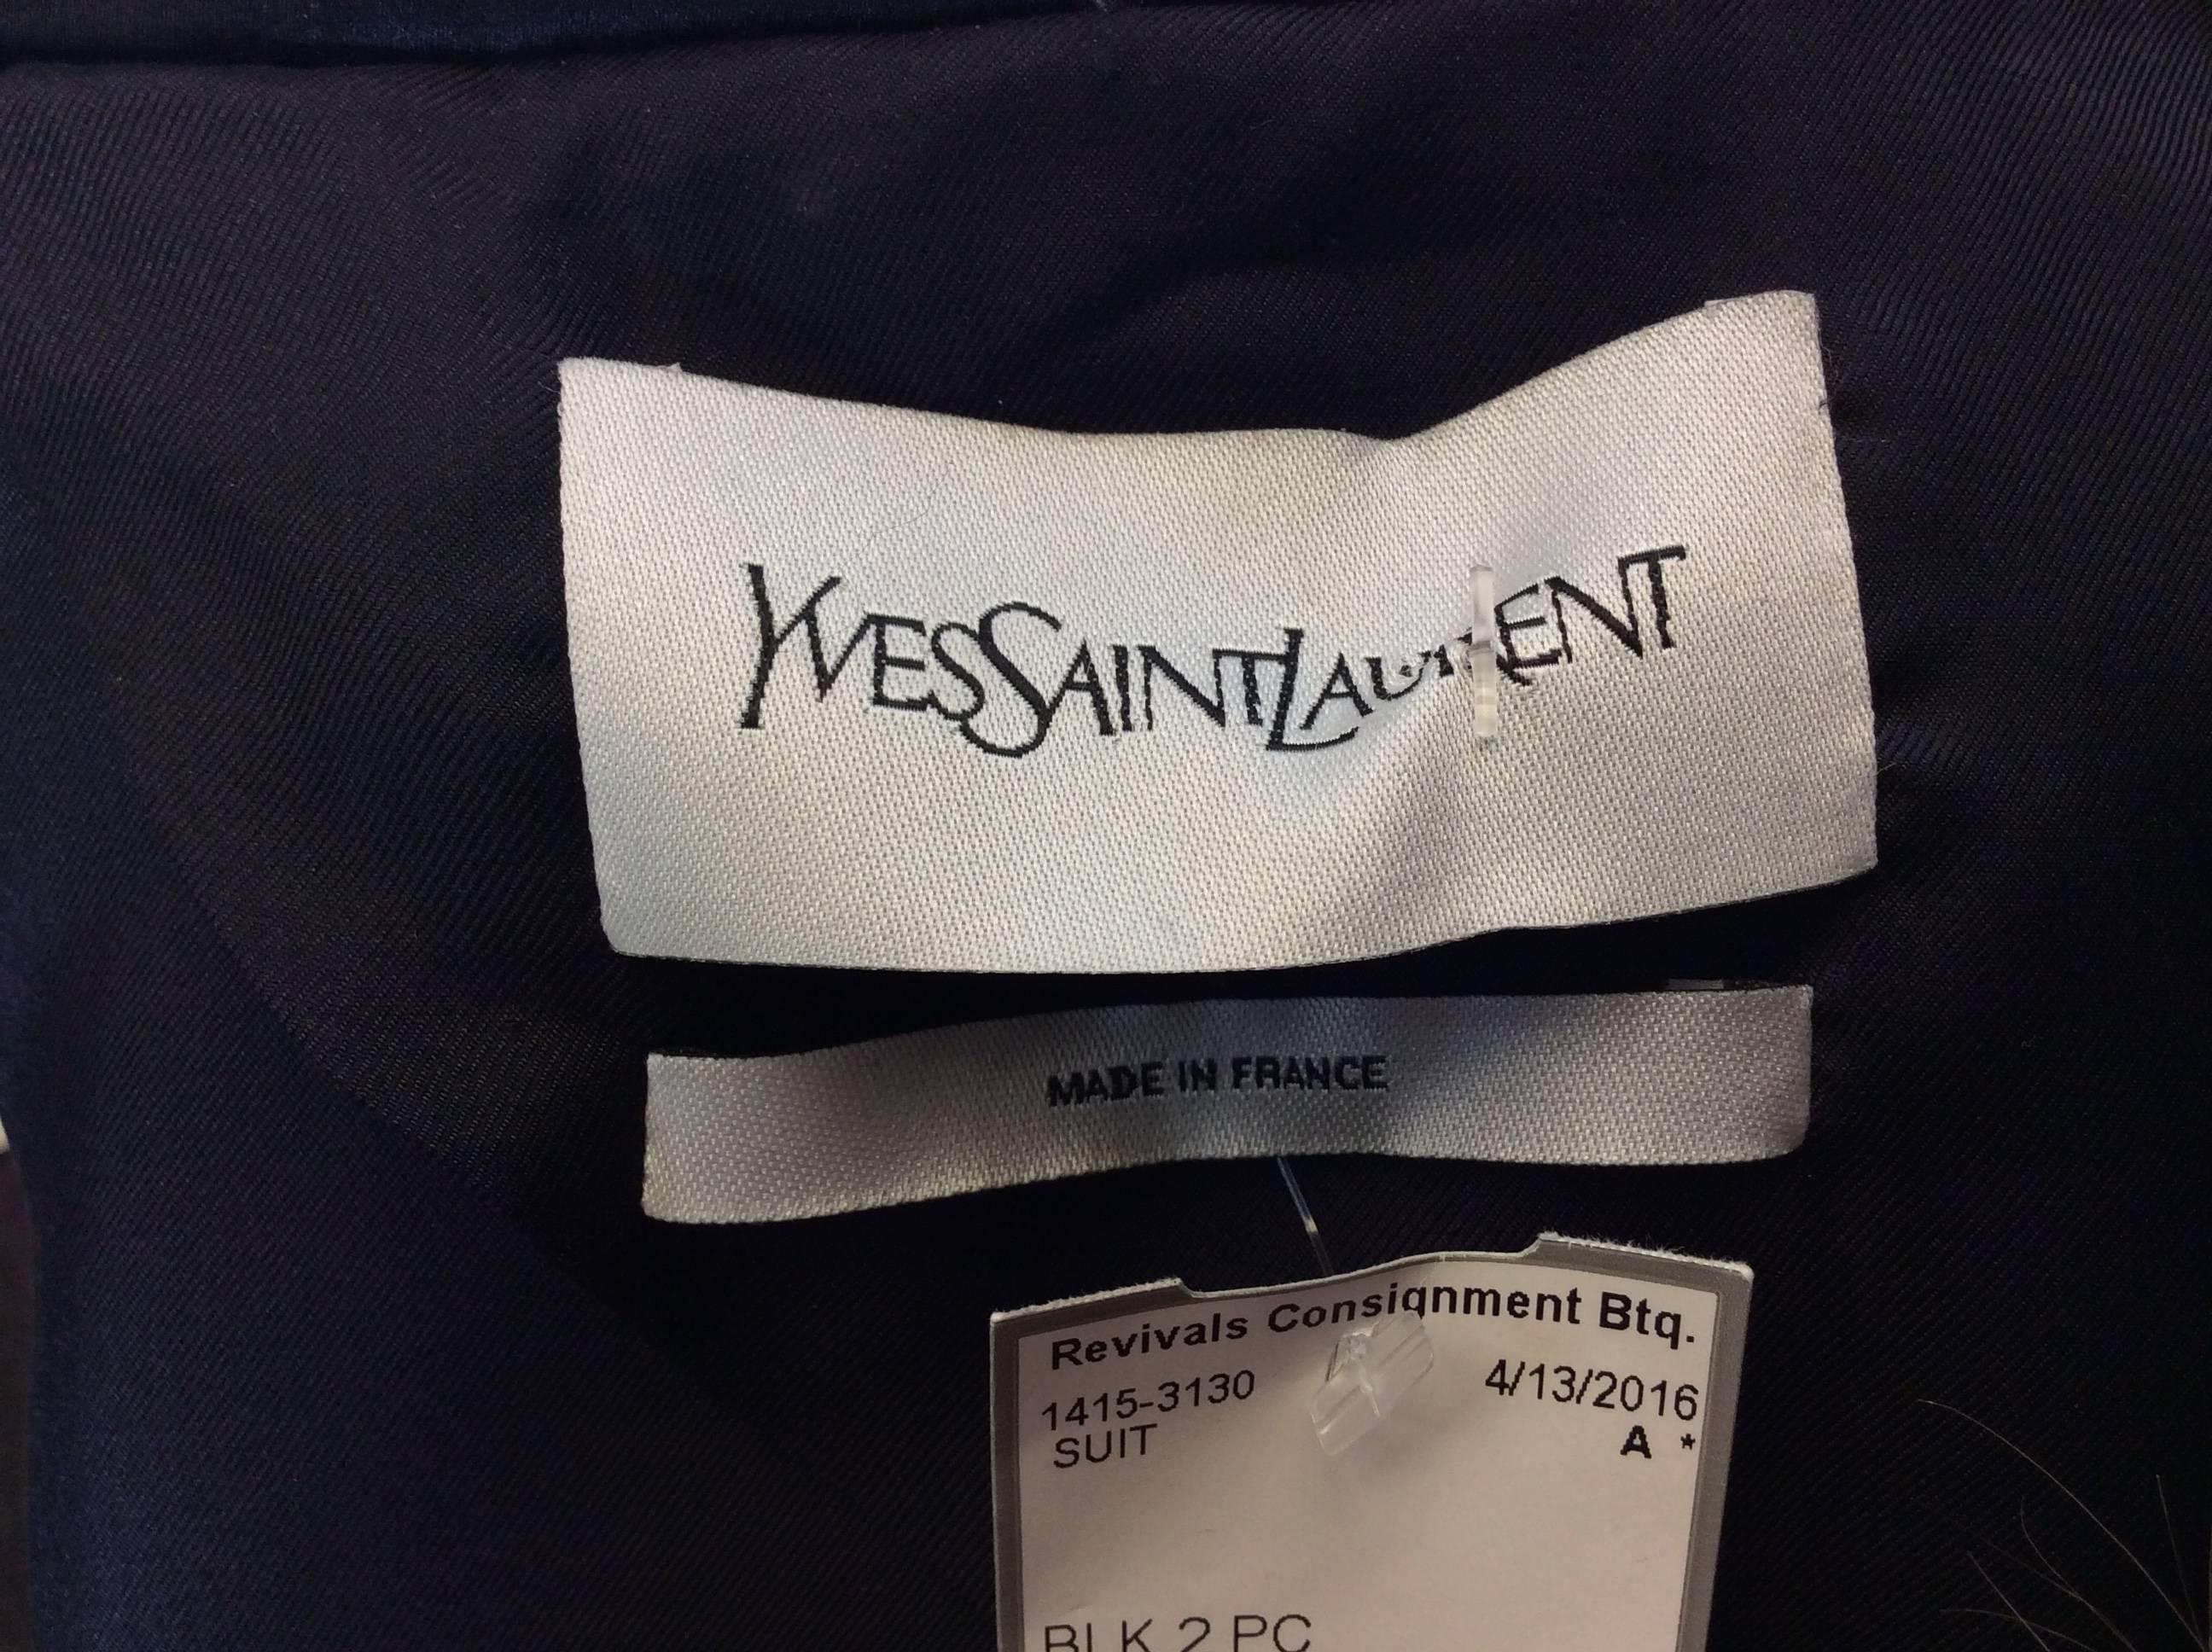 Yves Saint Laurent 2 Piece Tuxedo Pant Suit For Sale 1